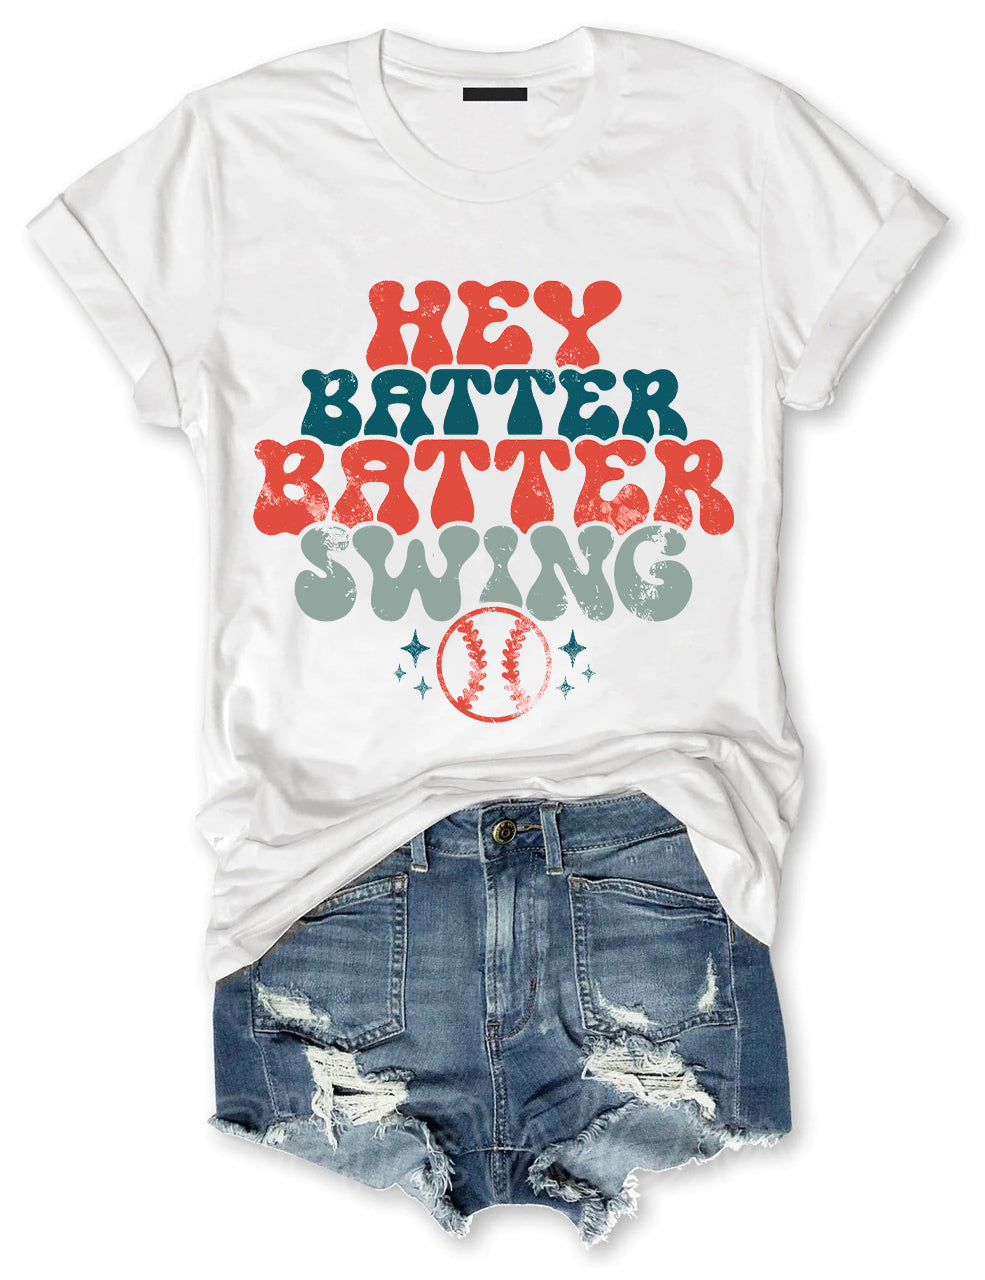 Hey Batter Batter Swing Baseball T-shirt